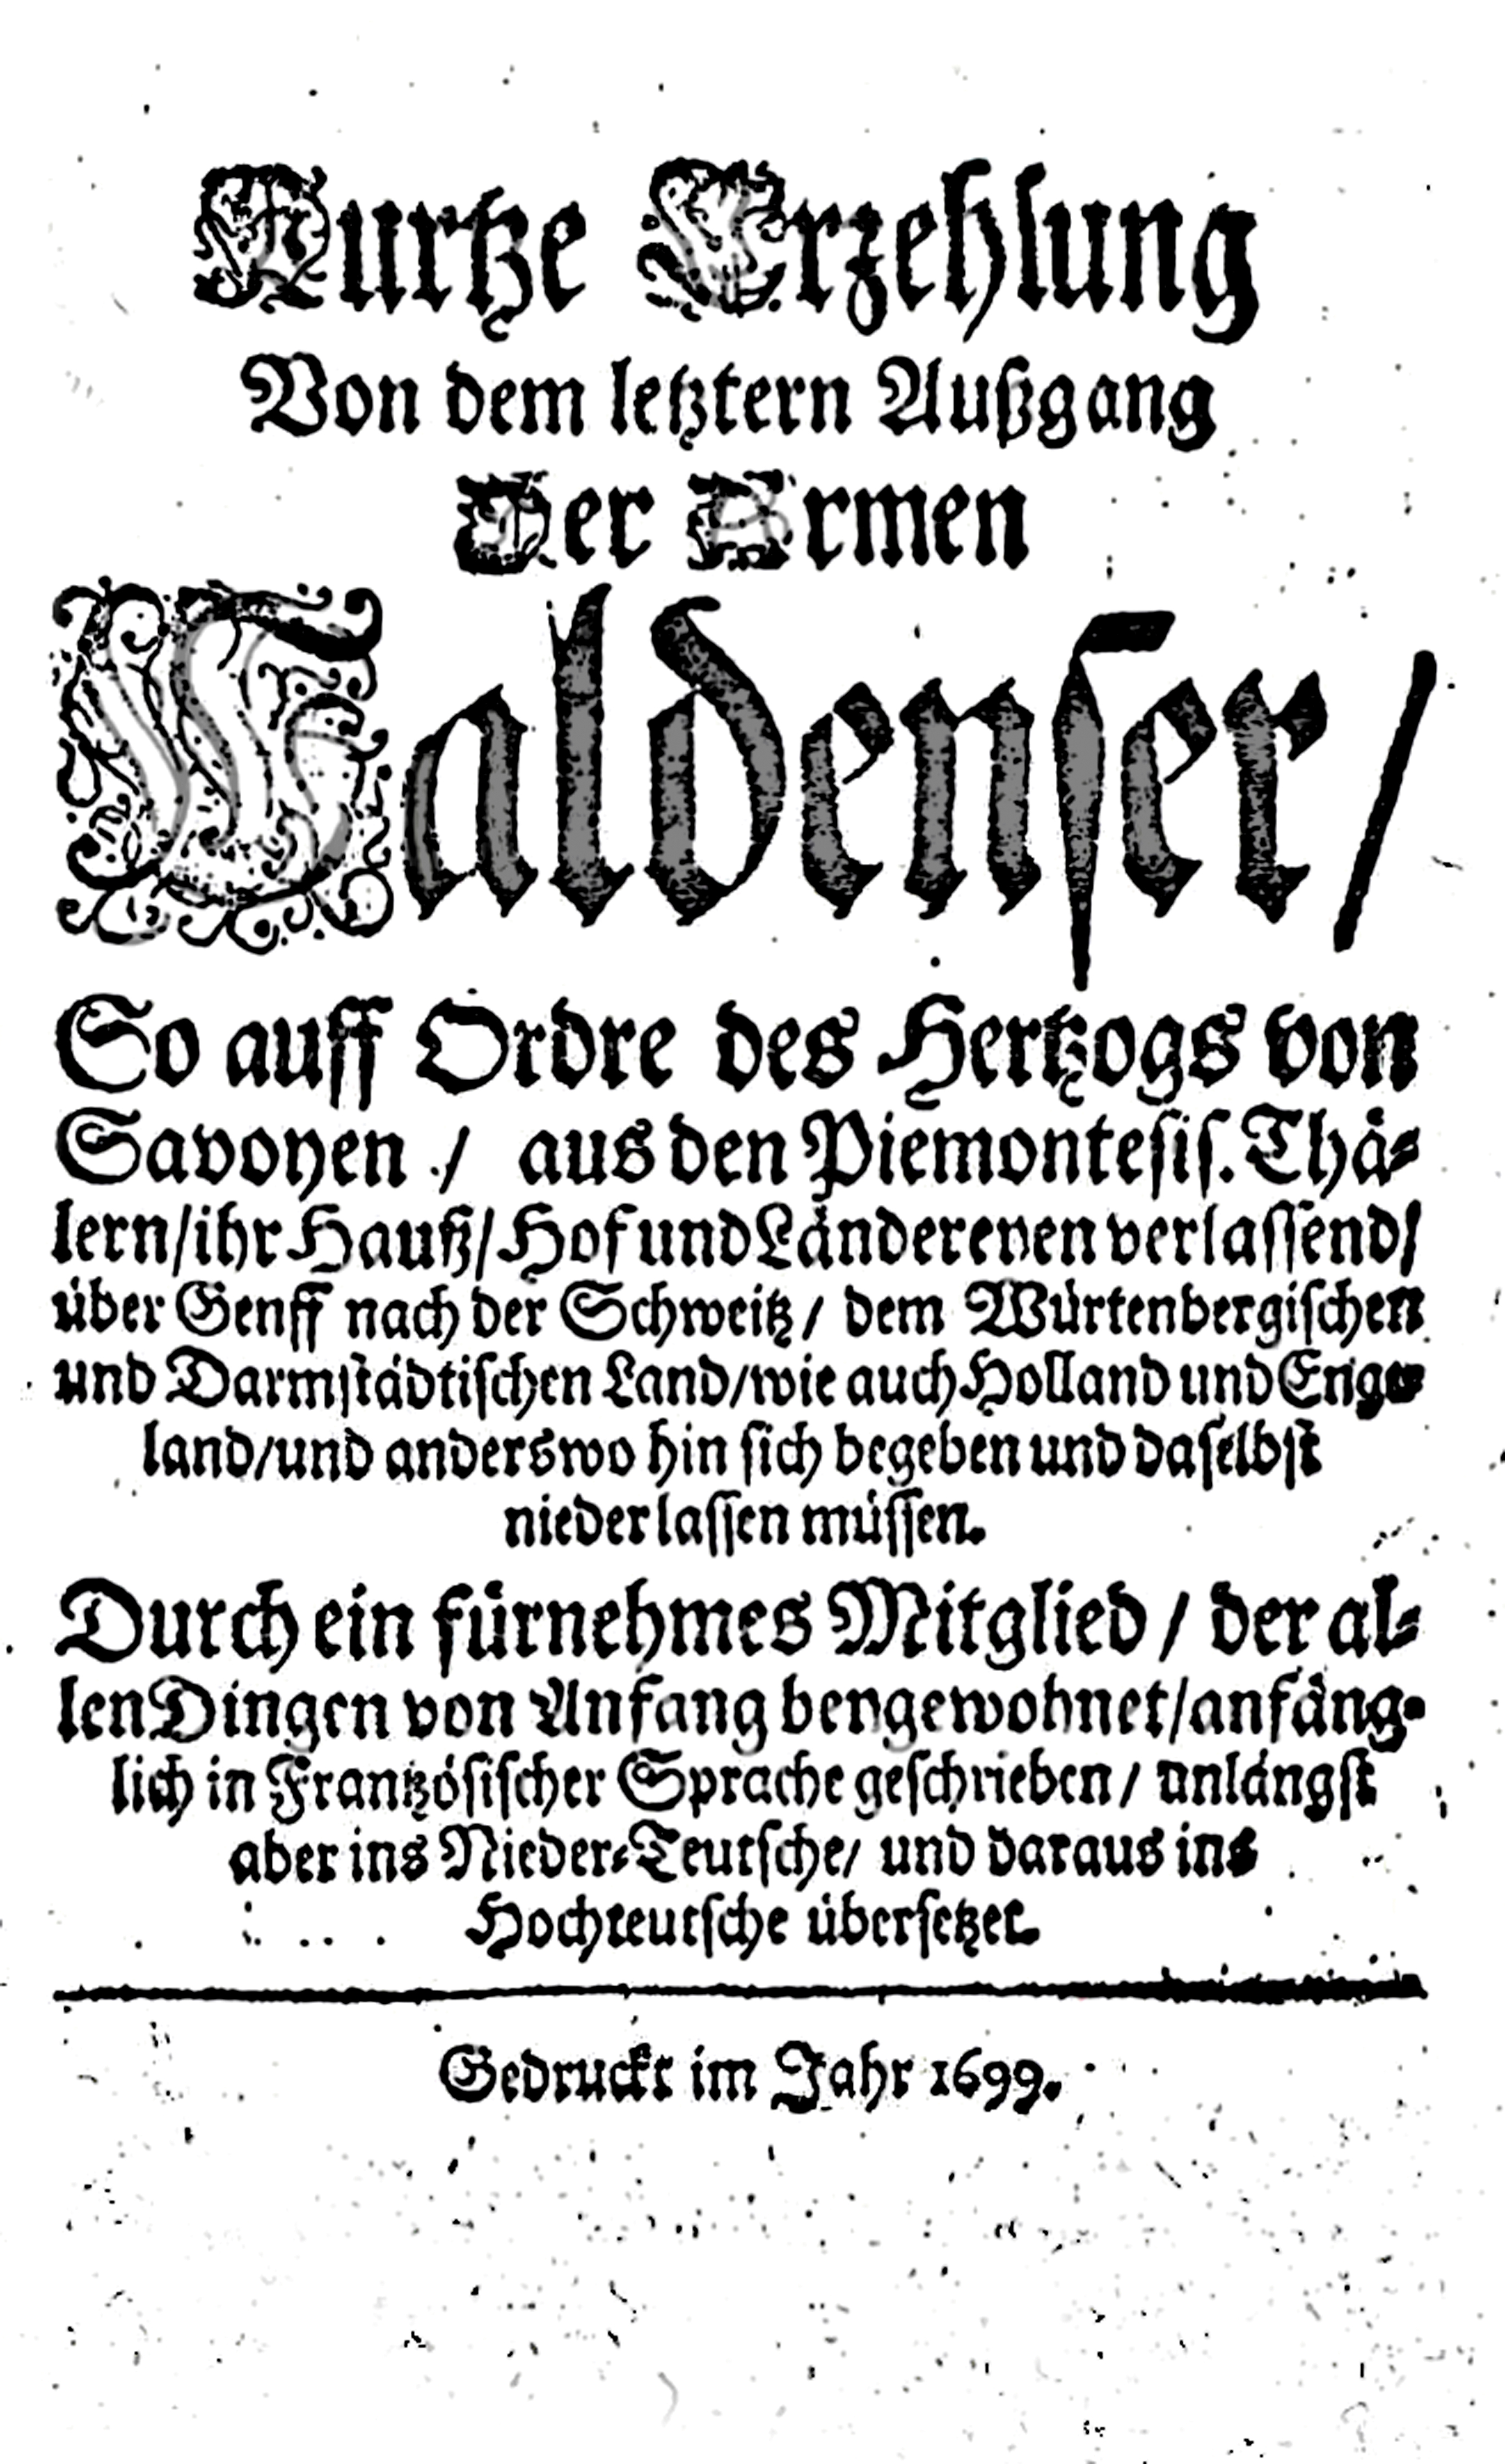 Papons Bericht der Vertreibung 1699, Bildquelle: Mit freundlicher Genehmigung des Henri-Arnaud-Hauses Ötisheim-Schönenberg.